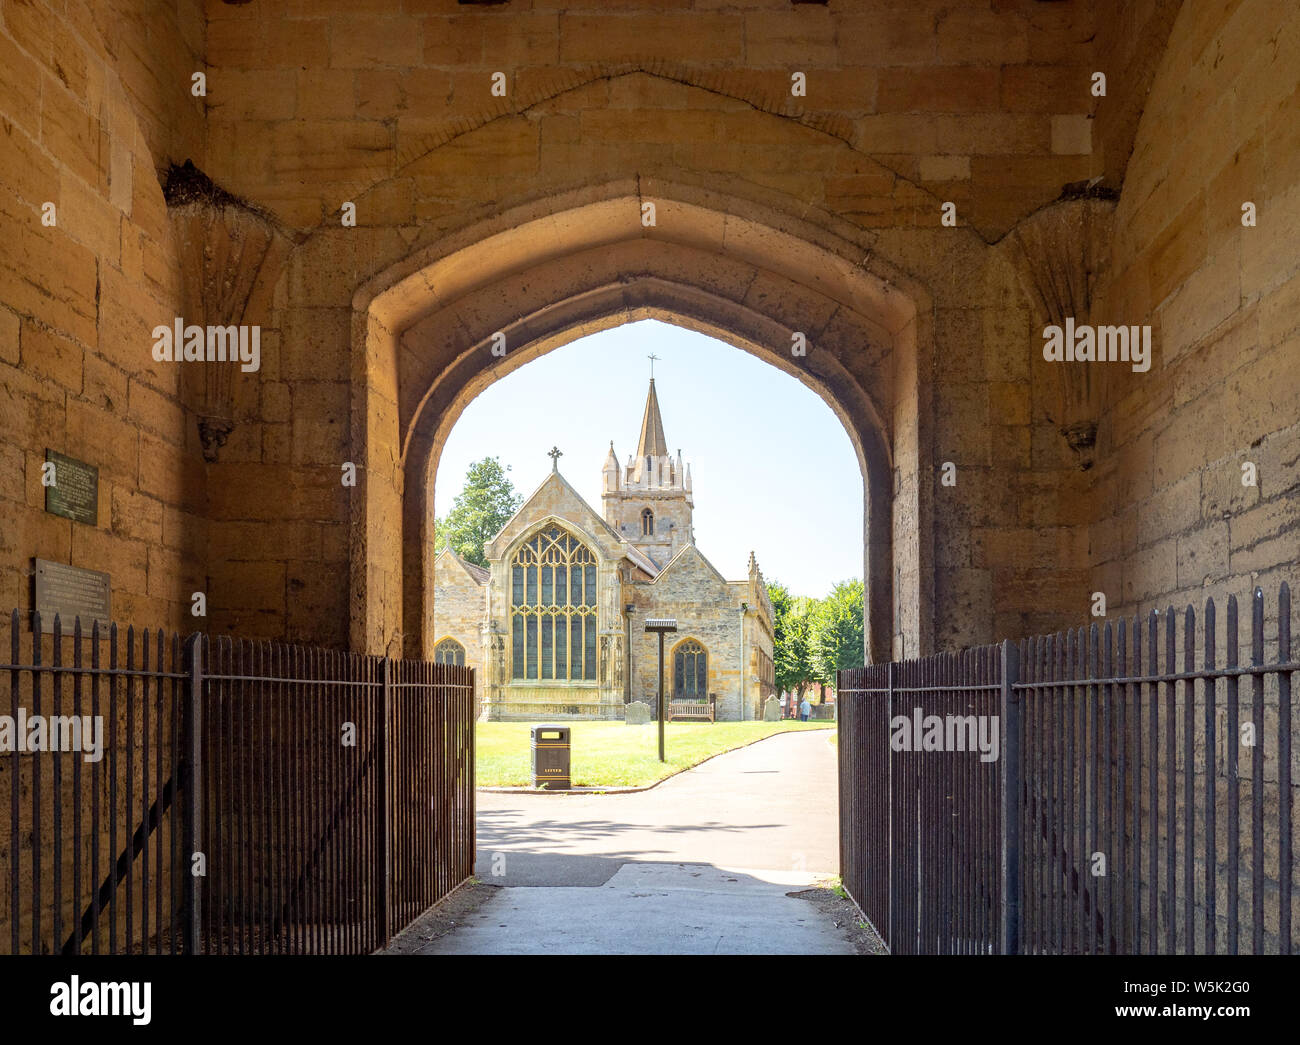 St Lawrence's Church, Evesham, Worcestershire, England, UK Stock Photo